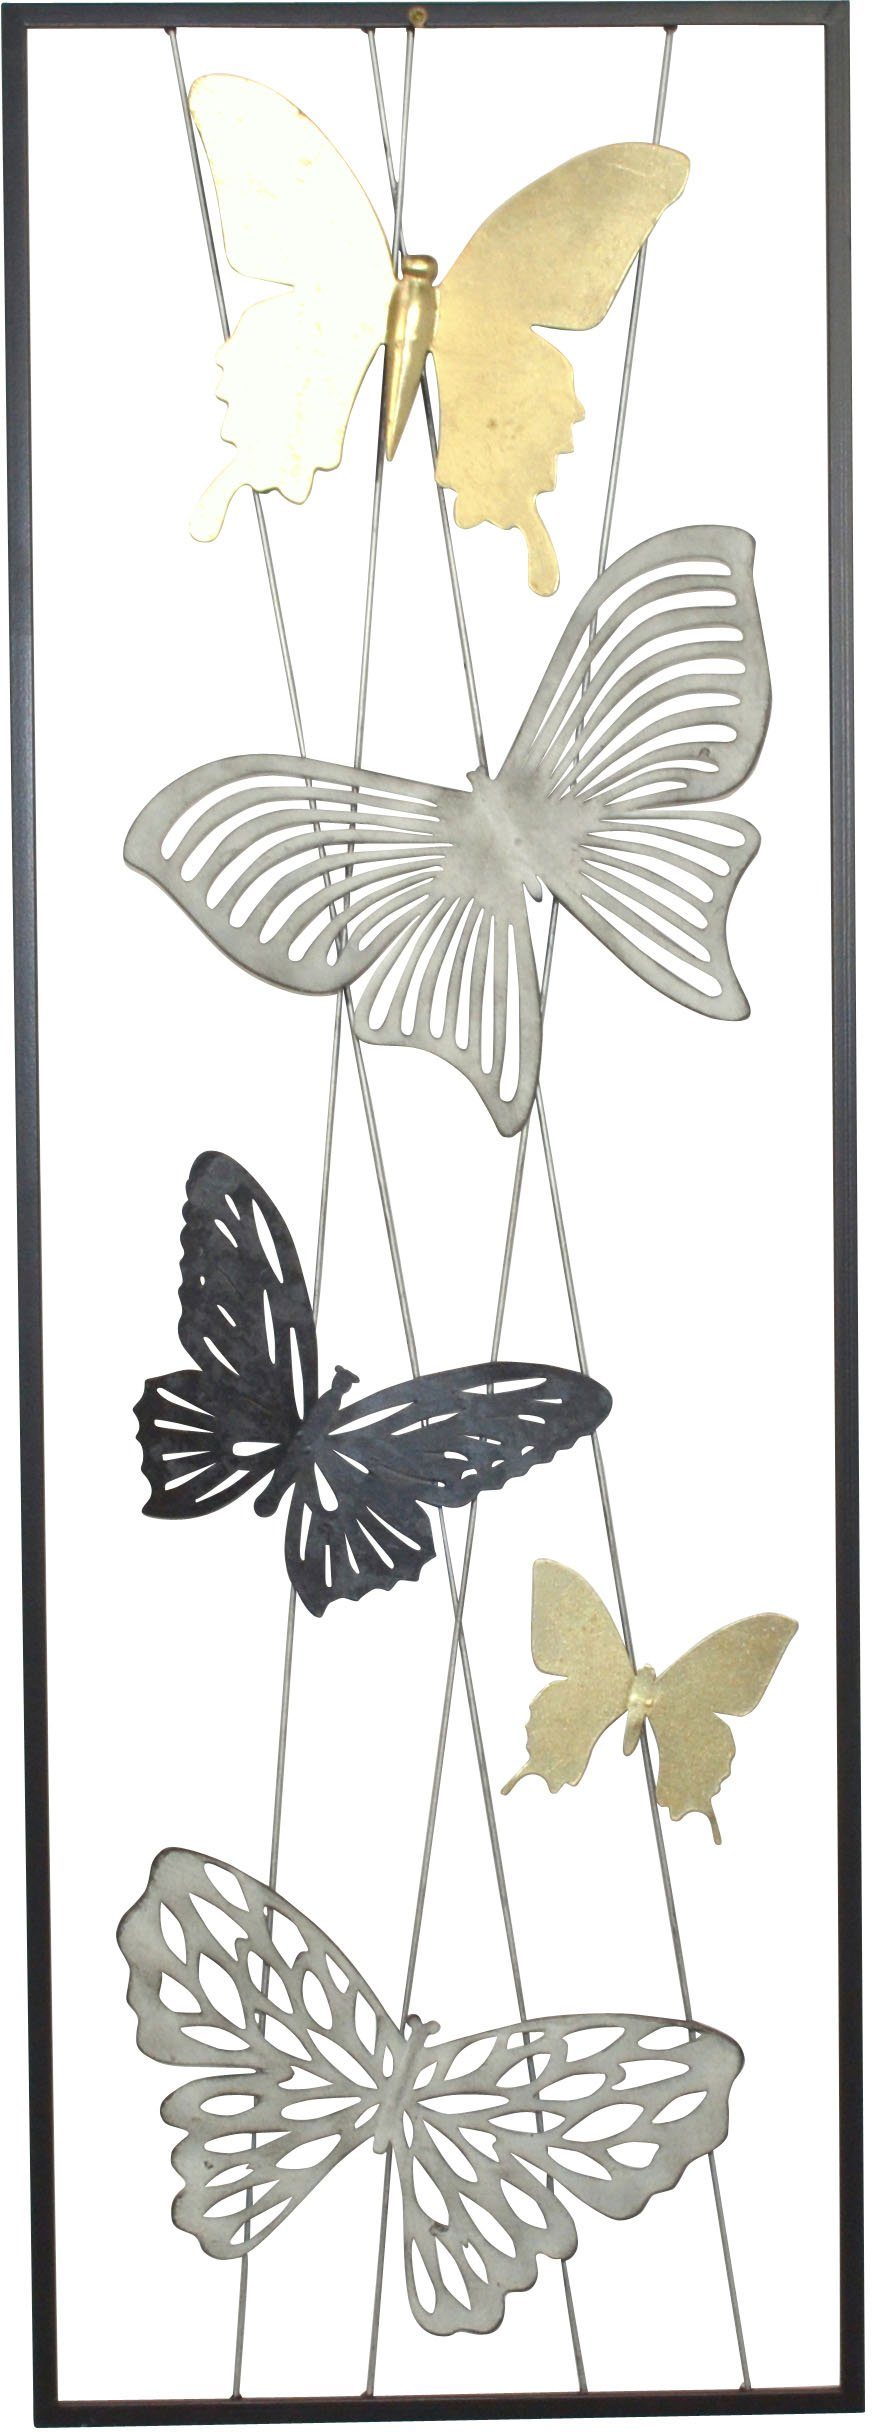 HOFMANN LIVING AND Metall, MORE Wanddekoration Motiv Schmetterlinge aus Wanddekoobjekt